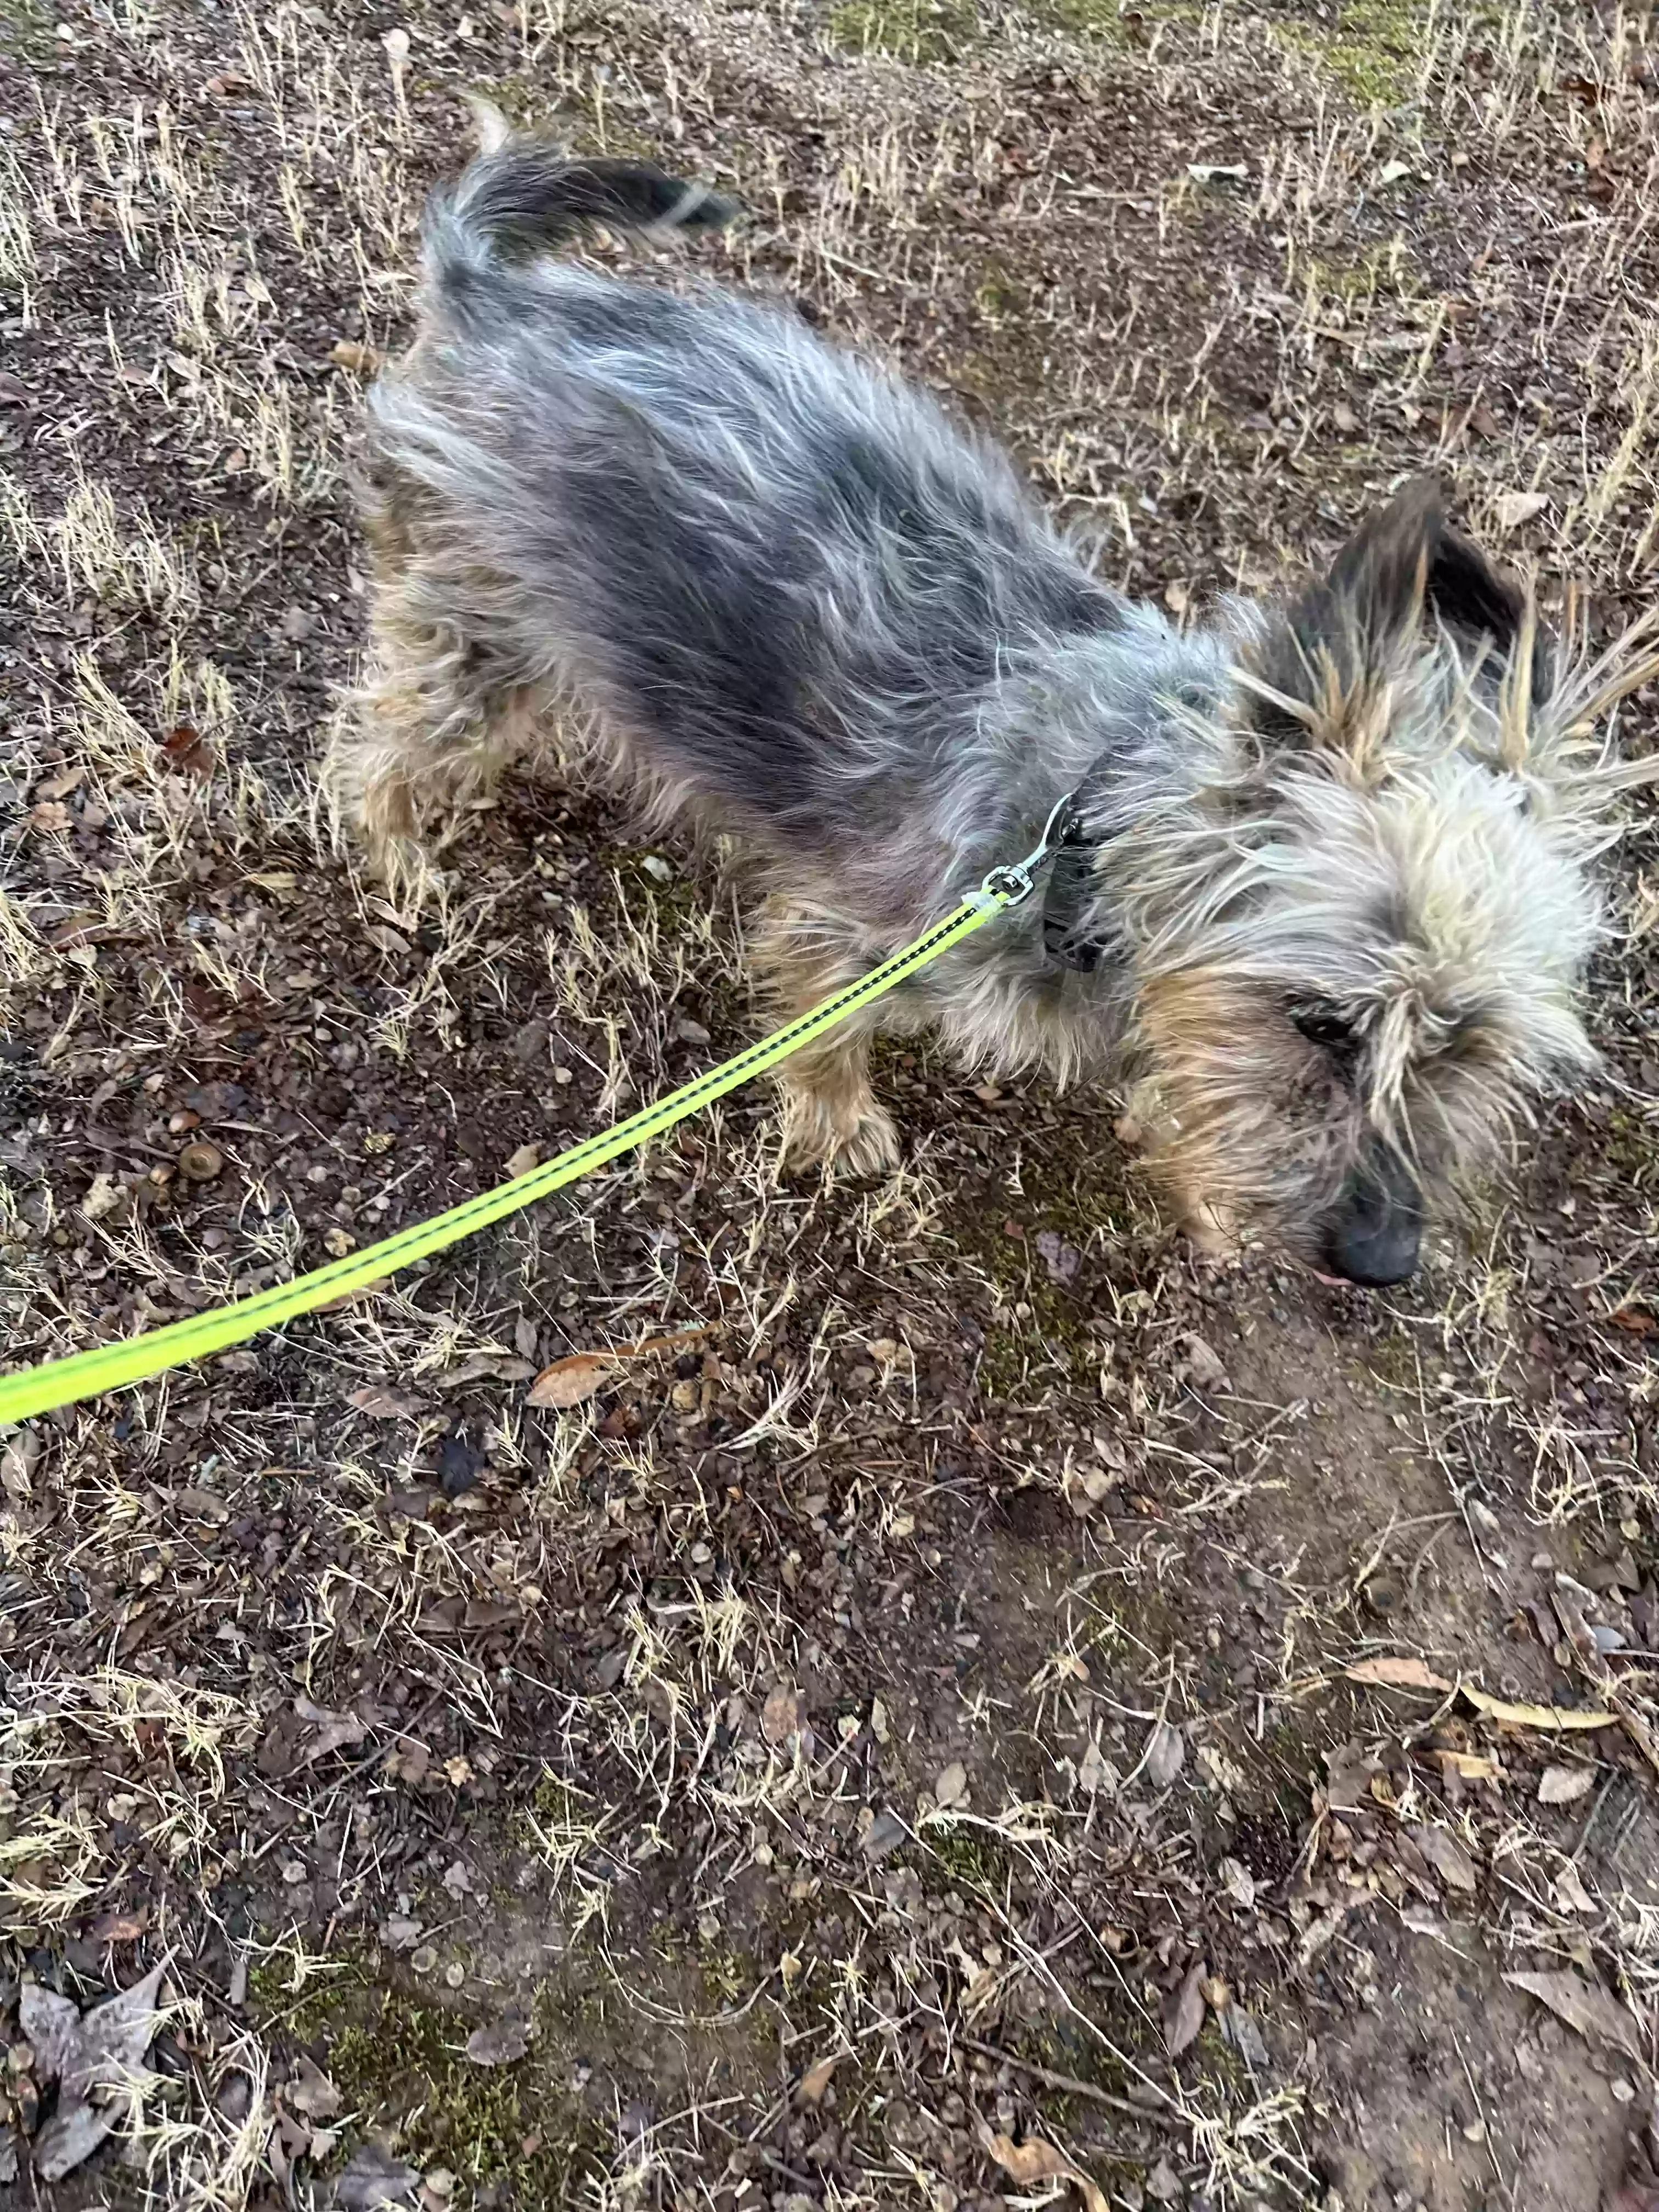 adoptable Dog in Lithonia,GA named Deigo